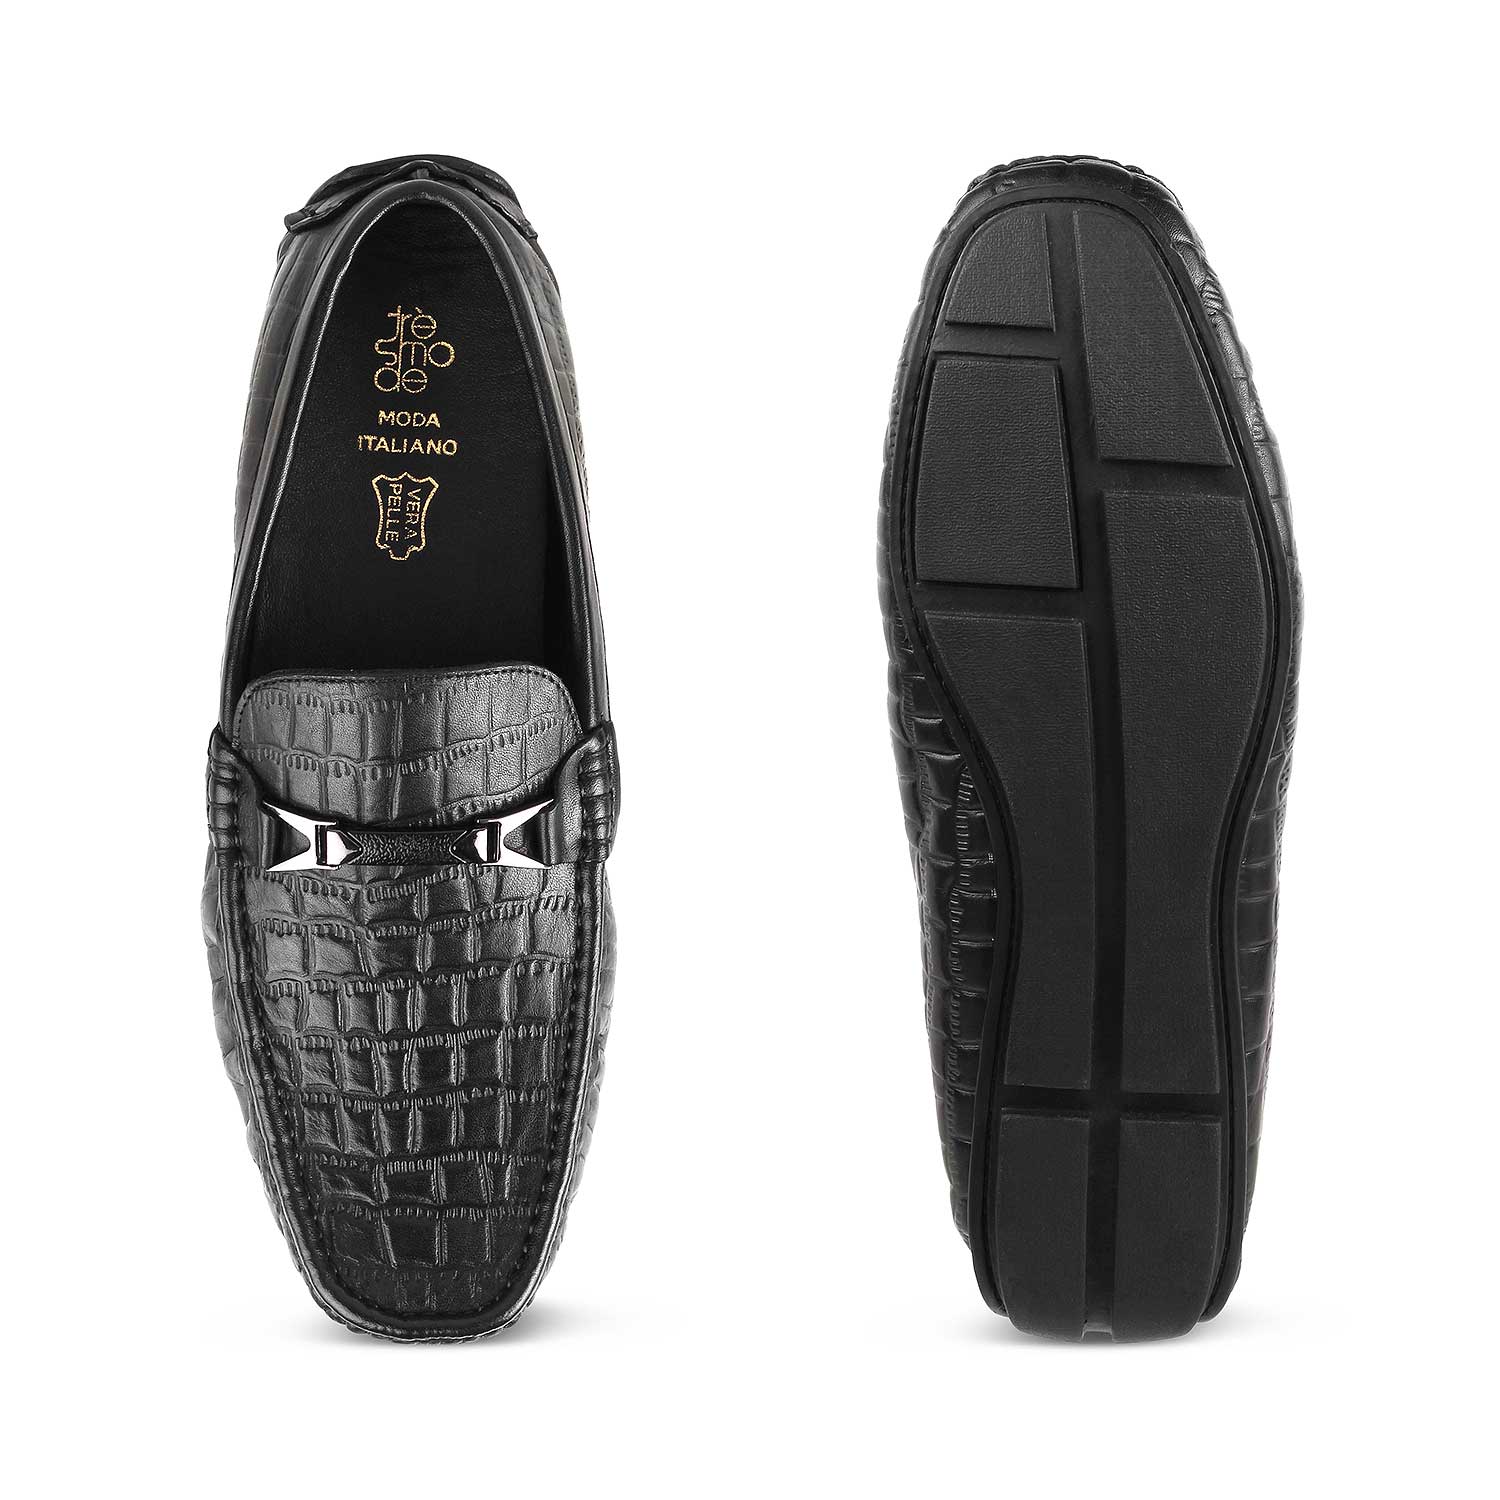 Hummer Black Men's Leather Driving Loafers Online at Tresmode.com